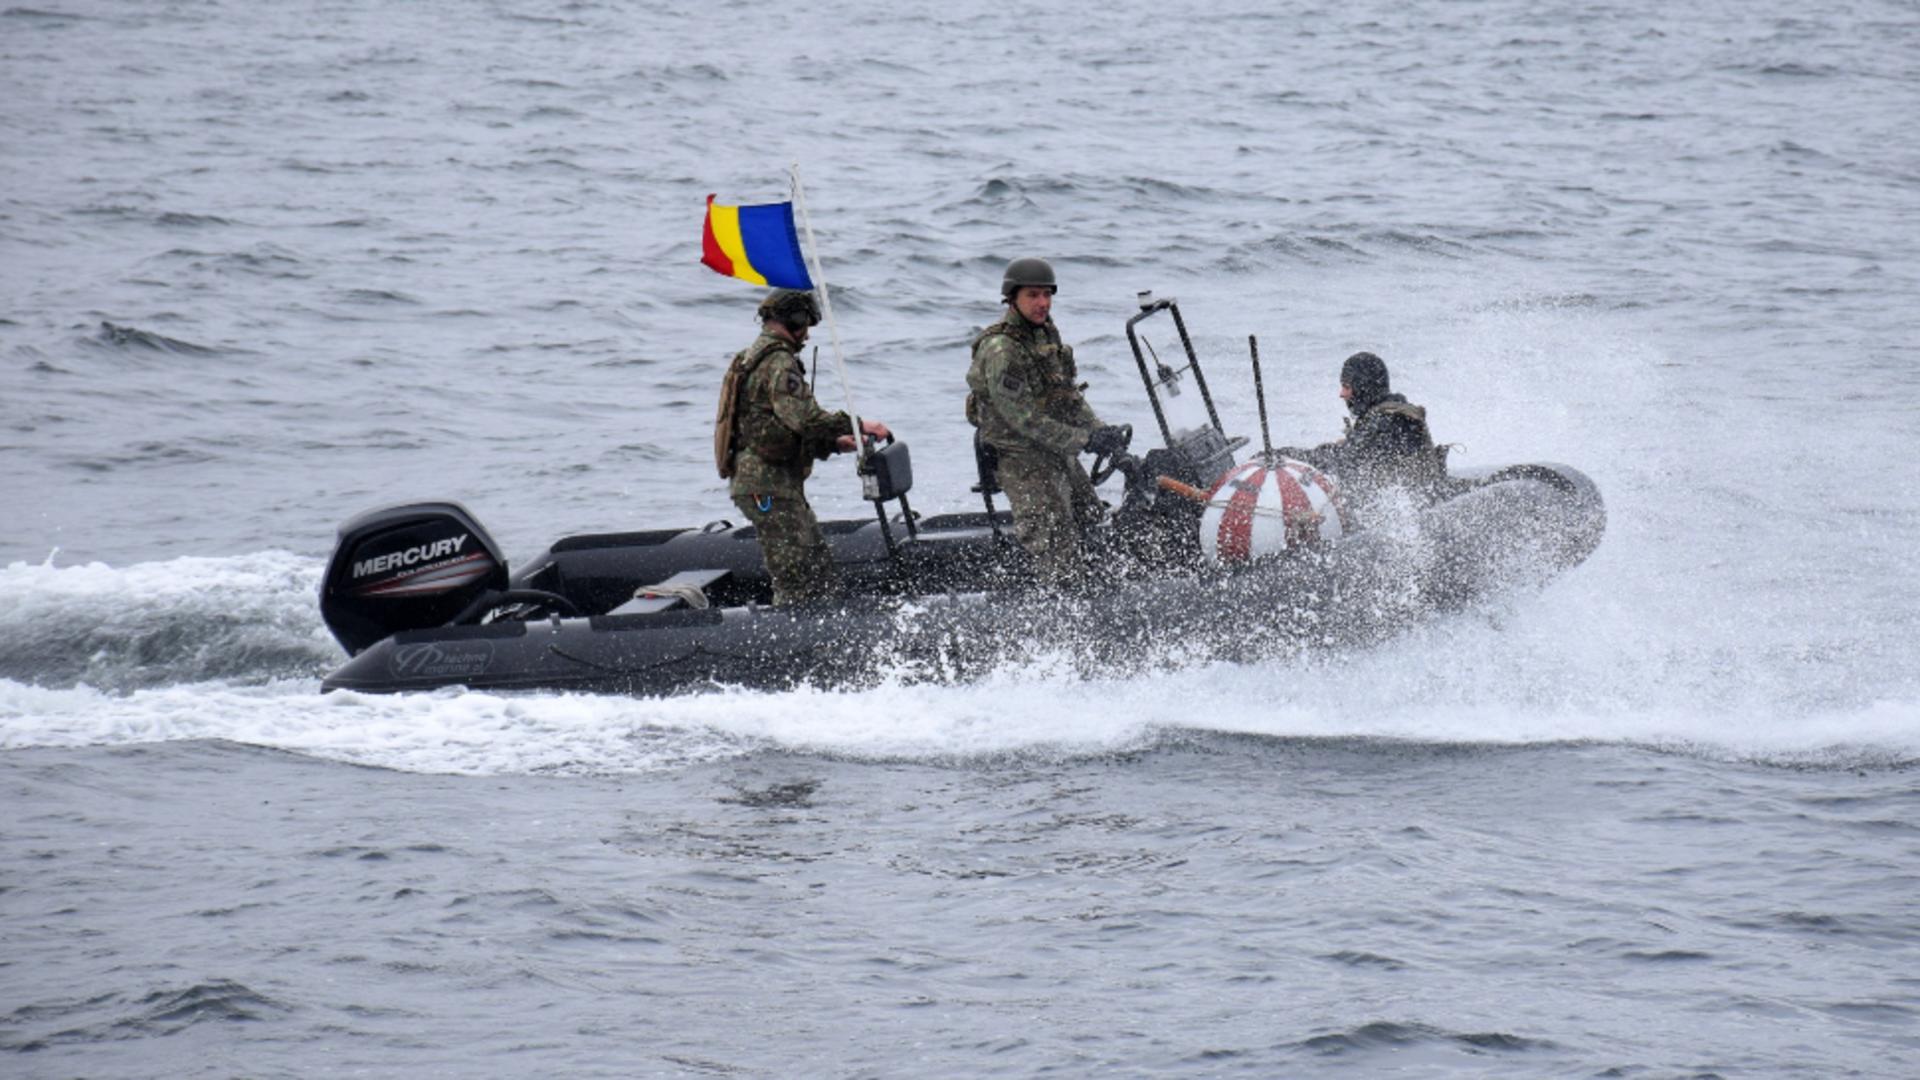 TUR de forță în Marea Neagră, cu misiuni de amploare - Scafandrii militari caută mine explozive aduse din Ucraina